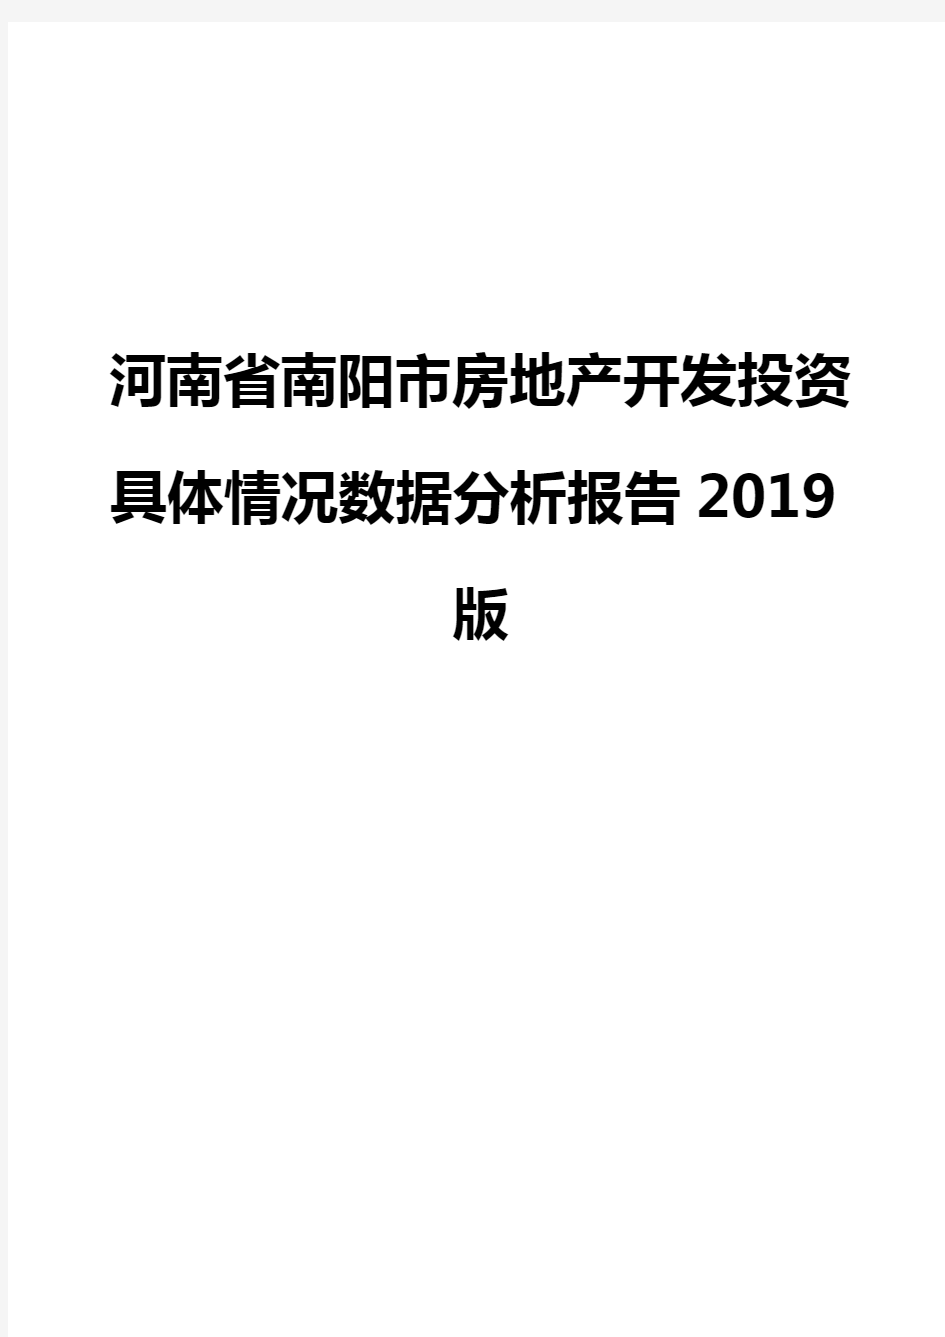 河南省南阳市房地产开发投资具体情况数据分析报告2019版